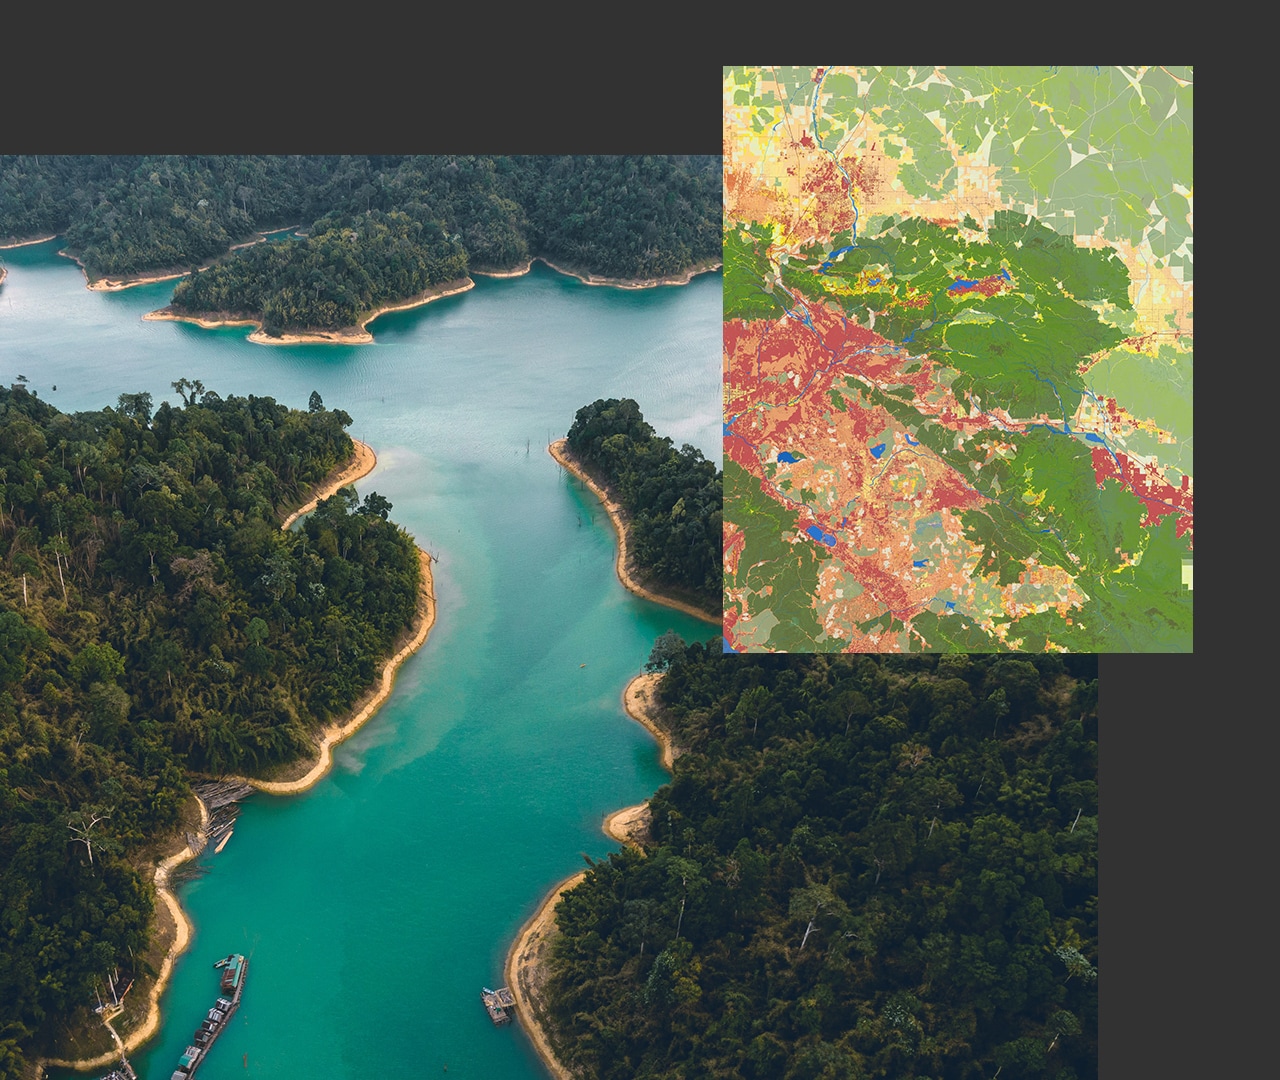 Baumbestandene grüne Inseln in einem blauen Meer, daneben eine digitale Karte